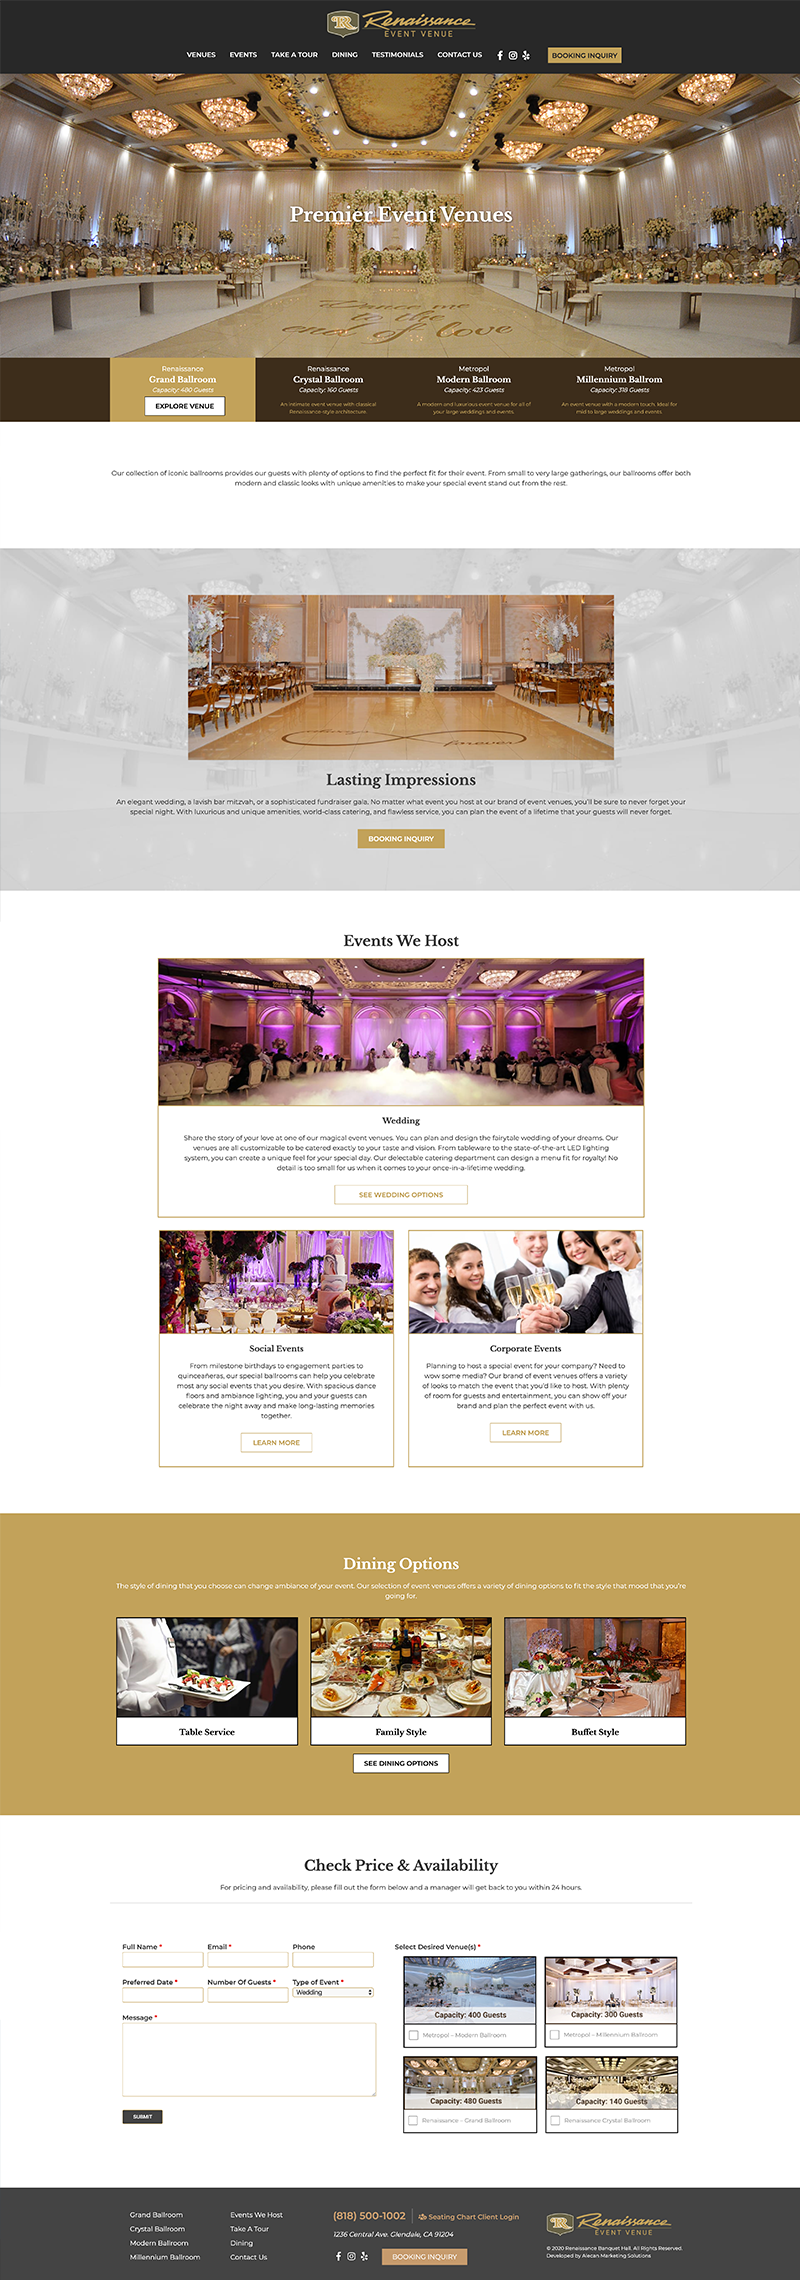 Renaissance Banquet Hall - Website